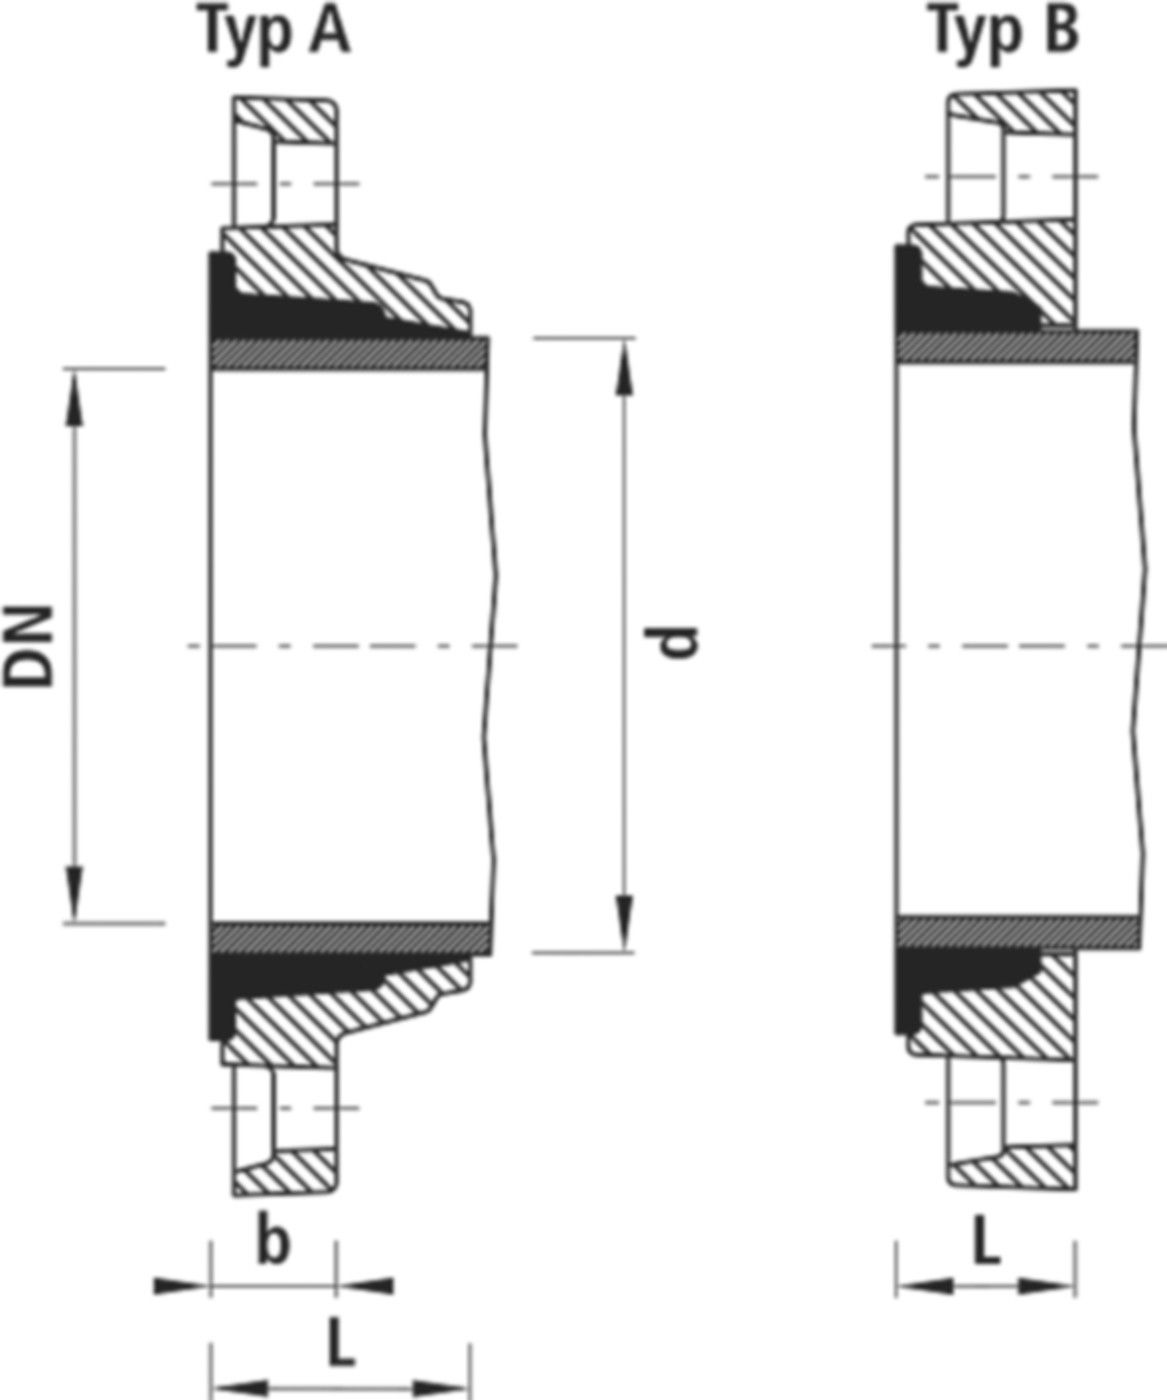 Zweikammer-Flansch für Stahlrohre 7130 PN 10/16 DN 150 / AD 168mm - Hawle Flanschformstücke